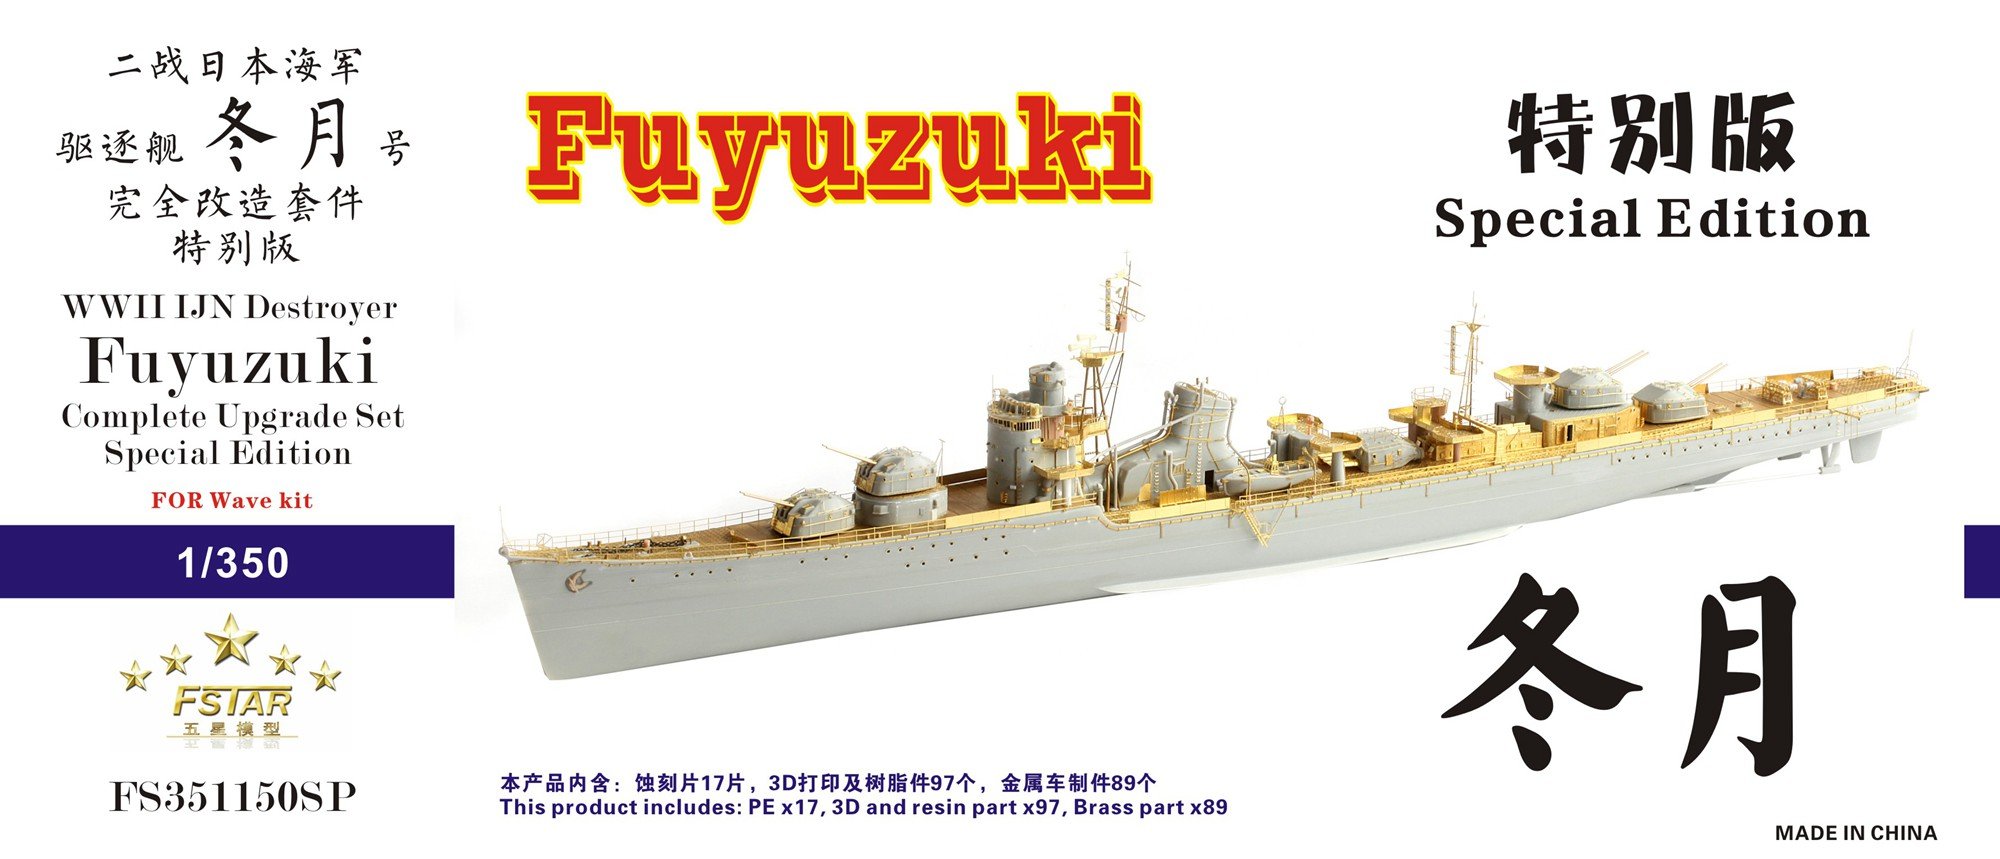 1/350 二战日本海军冬月号驱逐舰完全改造套件特别版(配Wave) - 点击图像关闭